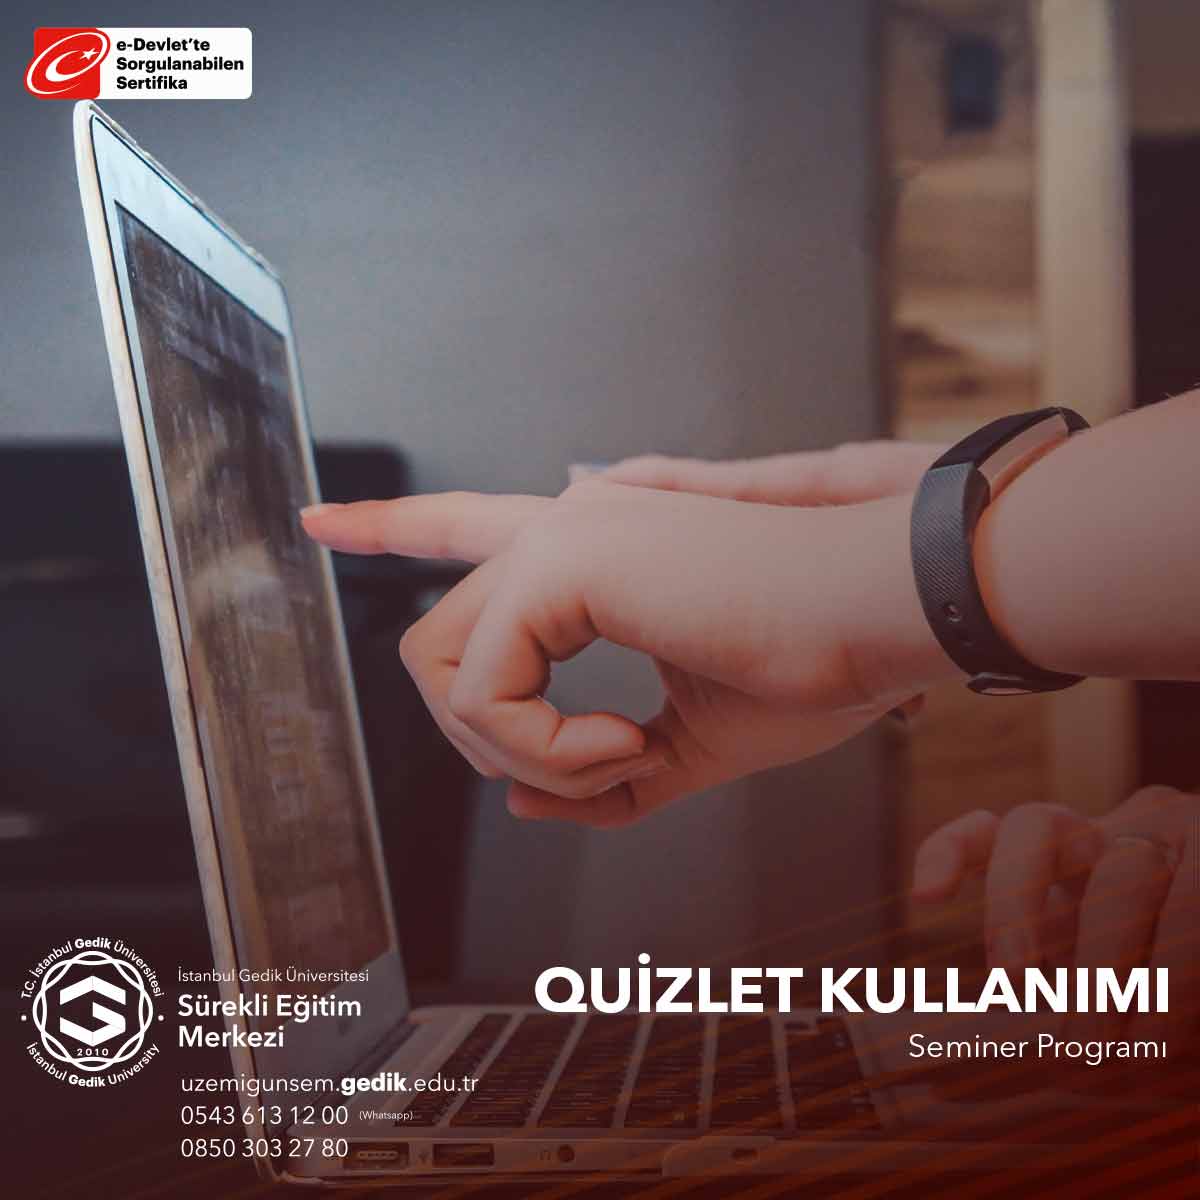 Quizlet Kullanımı Semineri, öğrencilere ve eğitimcilerine Quizlet platformunu etkili bir şekilde kullanarak öğrenme ve öğretme deneyimlerini zenginleştirmelerini öğrenmeleri için bir fırsat sunar.